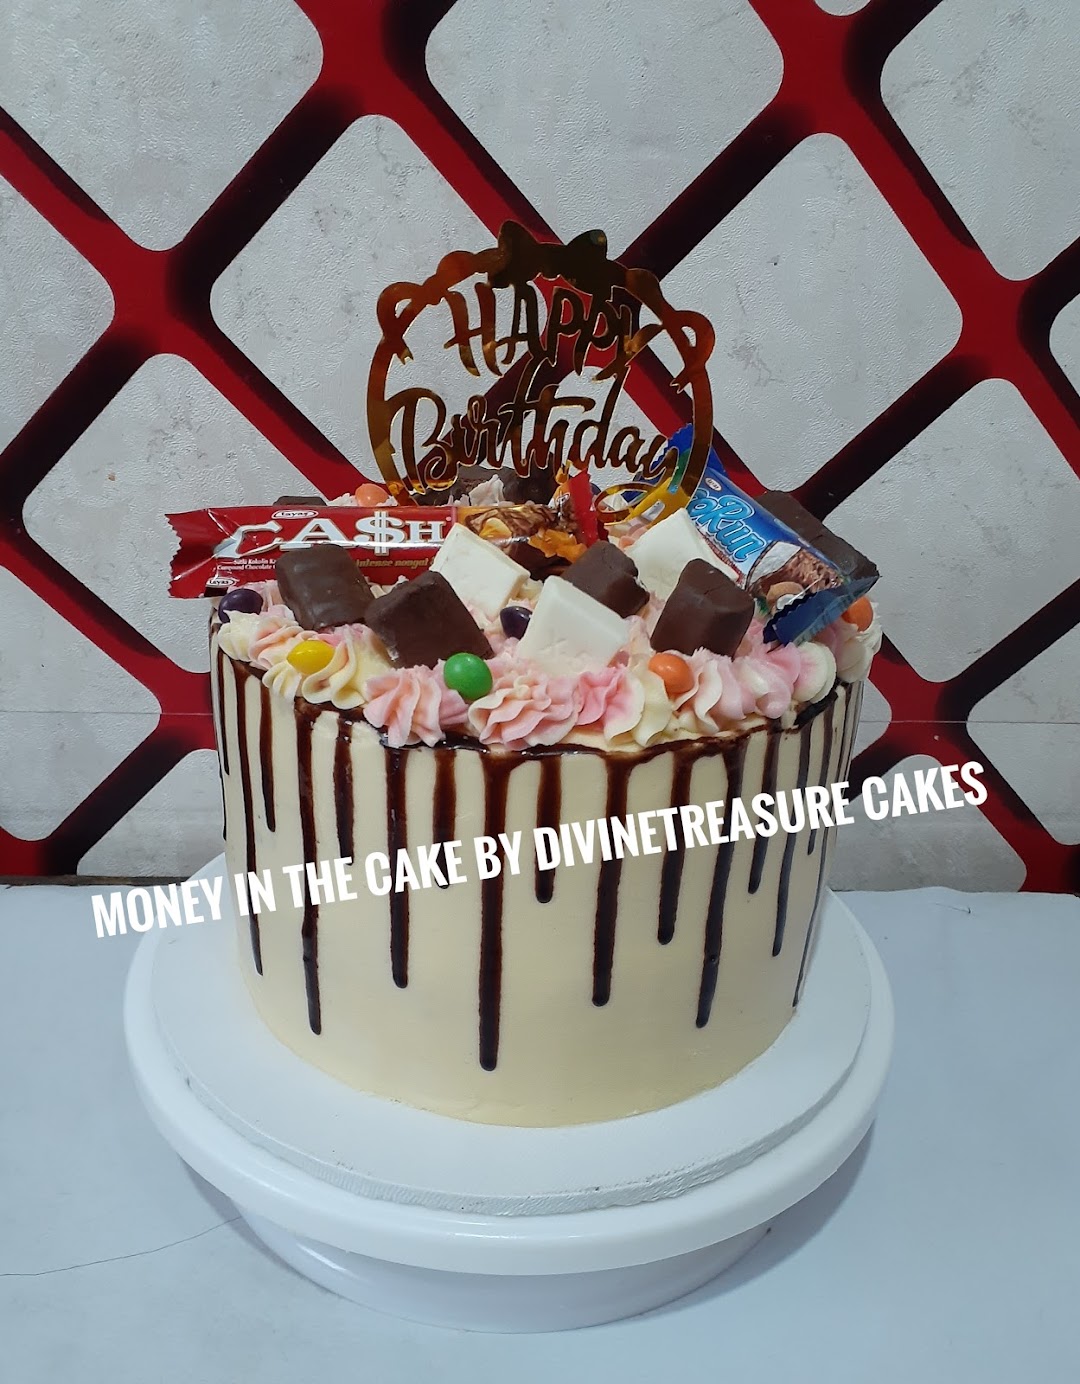 DivineTreasure Cakes (Juliettez Concept)